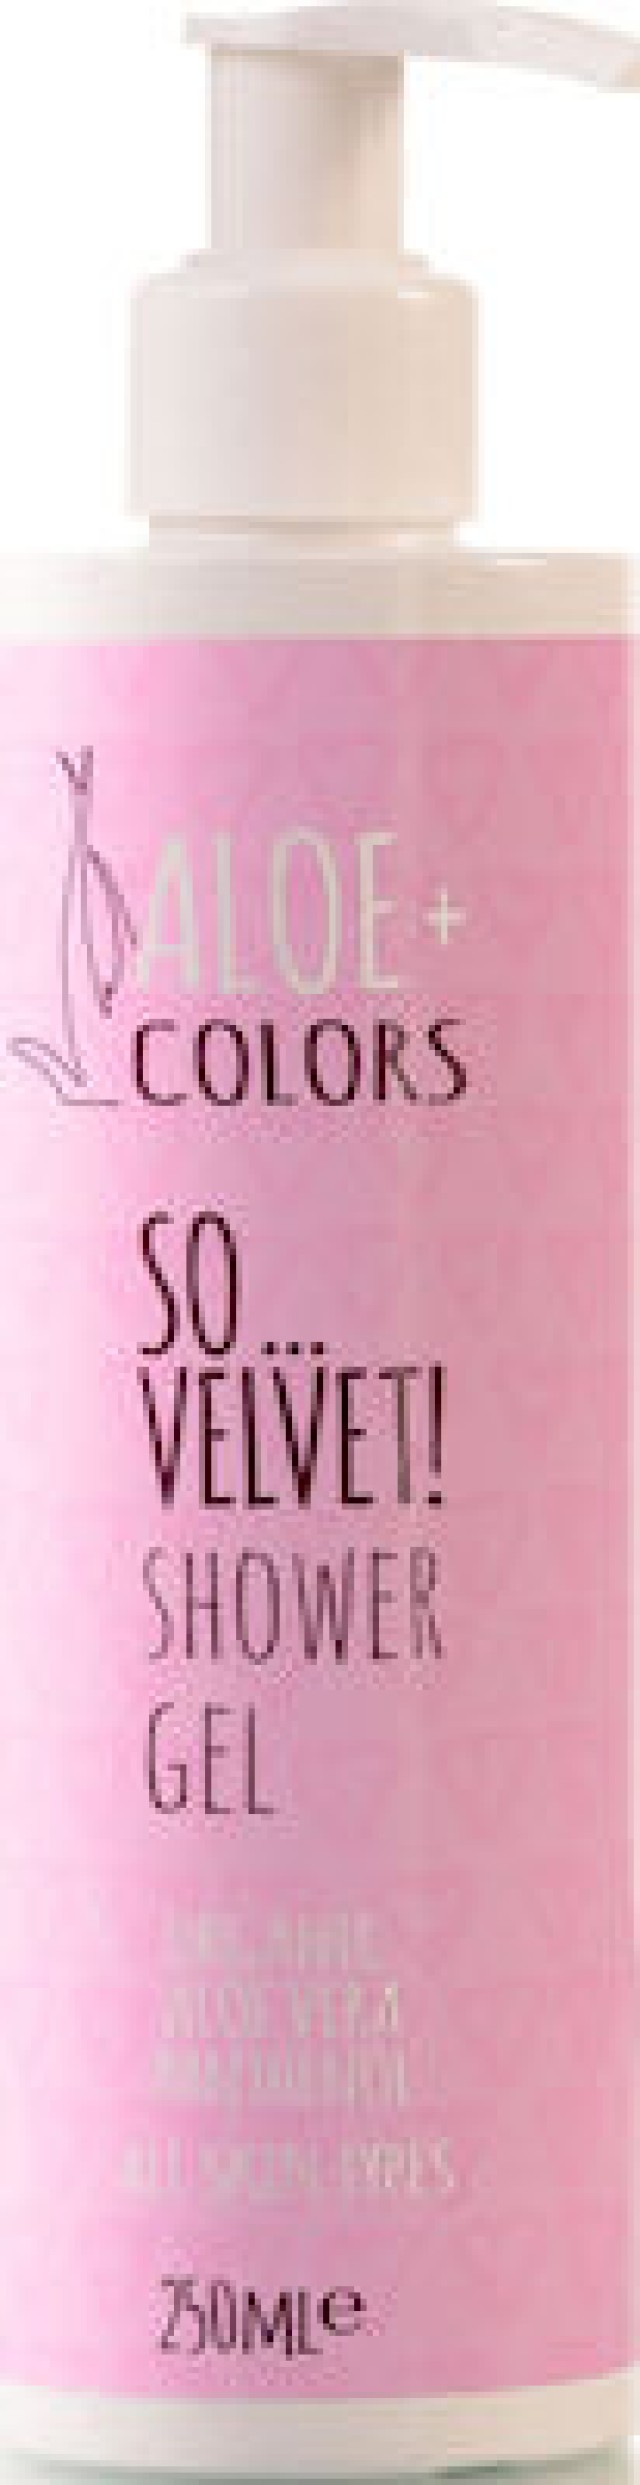 Aloe+ Colors So Velvet Shower Gel Απαλό Αφρόλουτρο Με Άρωμα Πούδρας 250ml